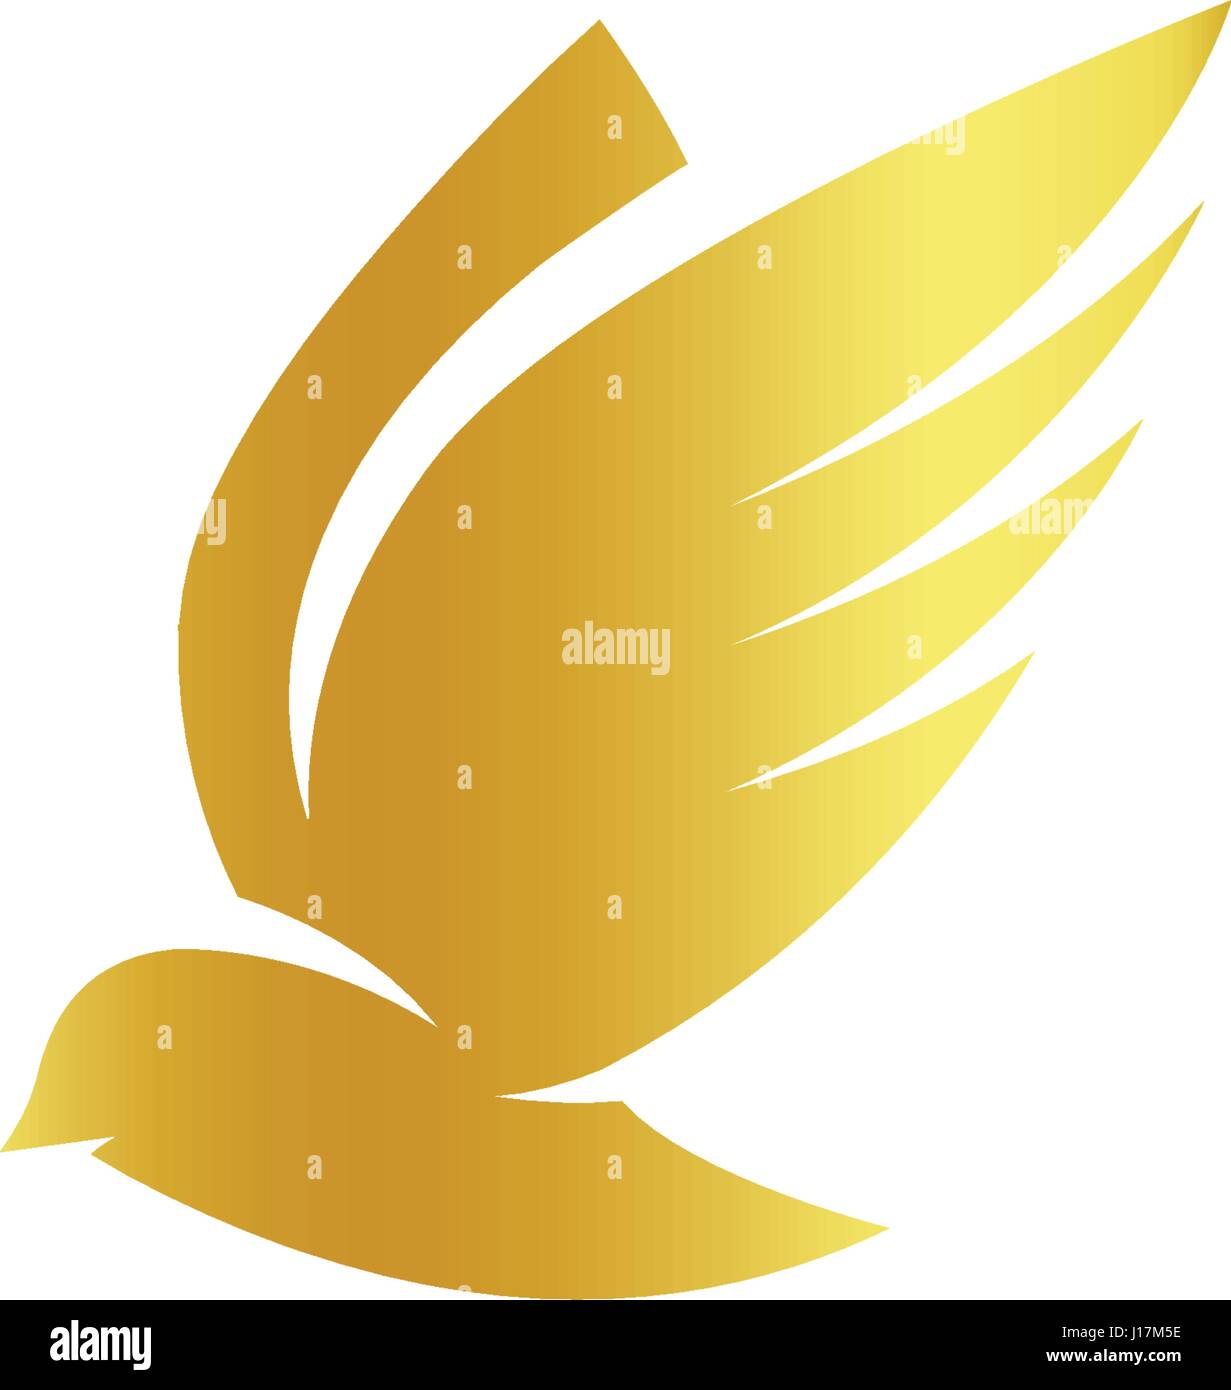 Isolierte abstrakte Goldfarbe Vögel Silhouetten-Logo auf weißem Hintergrund, Flügel und Federn Elemente Schriftzug set Vektor-illustration Stock Vektor